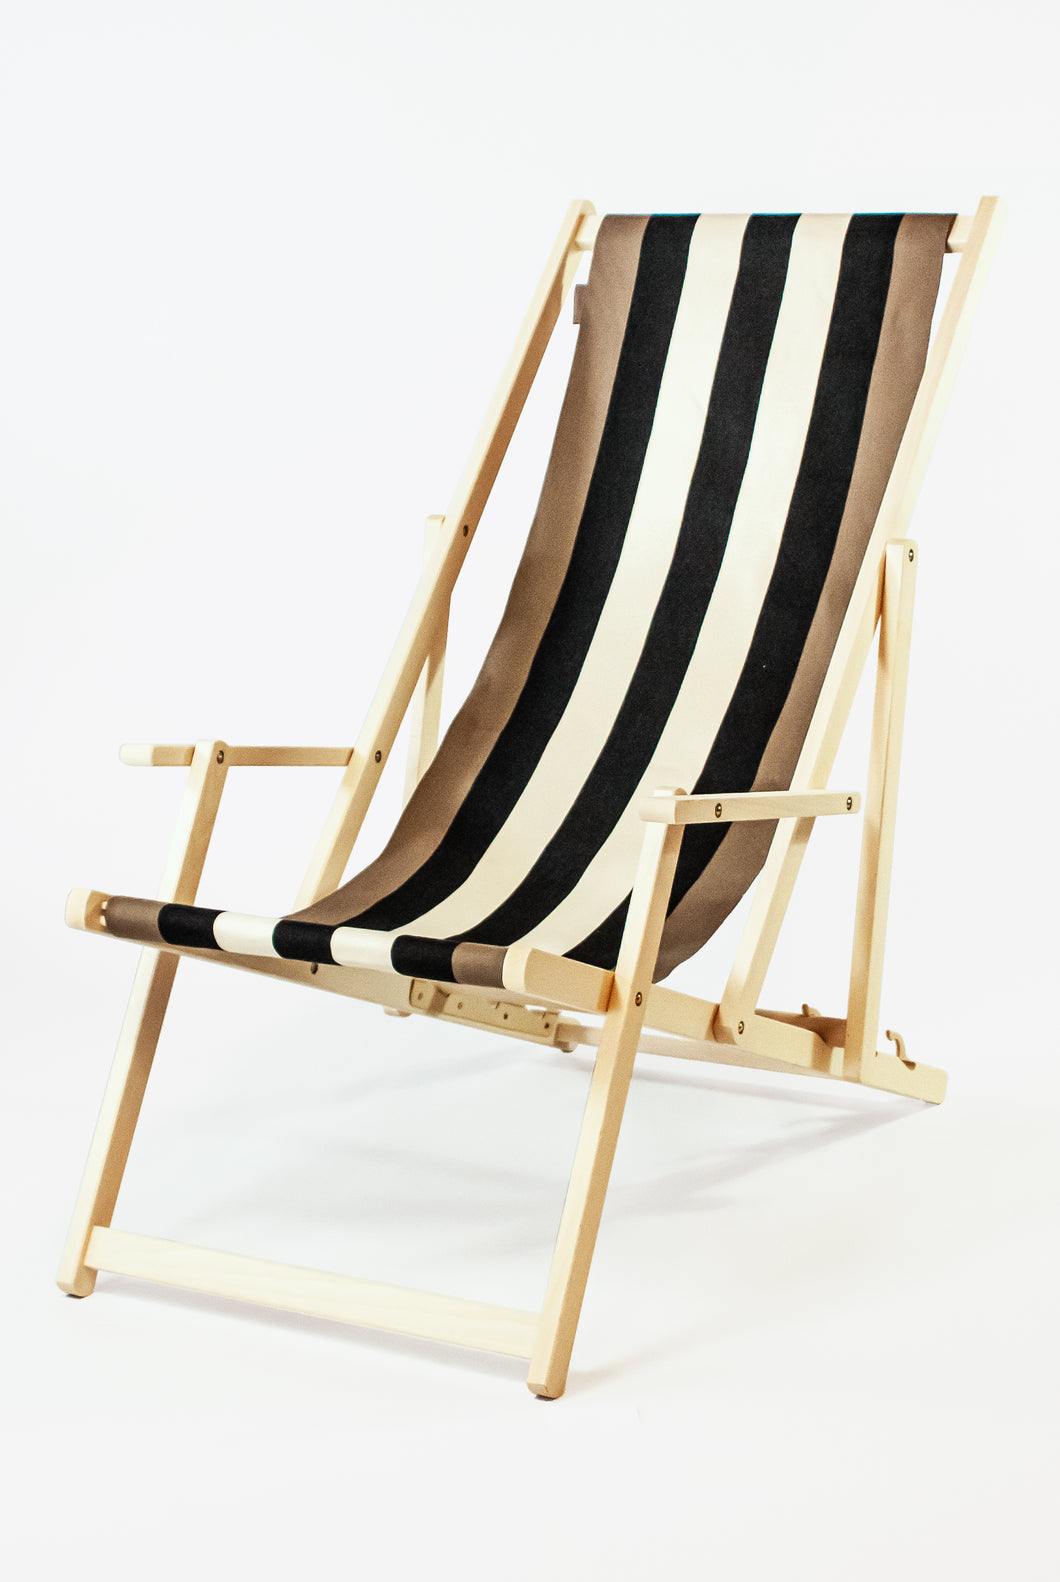 hebben zich vergist aangenaam Kwaadaardig strandstoel met armleuning gestreepte canvas loper - kleurmeester.nl –  Kleurmeester.nl